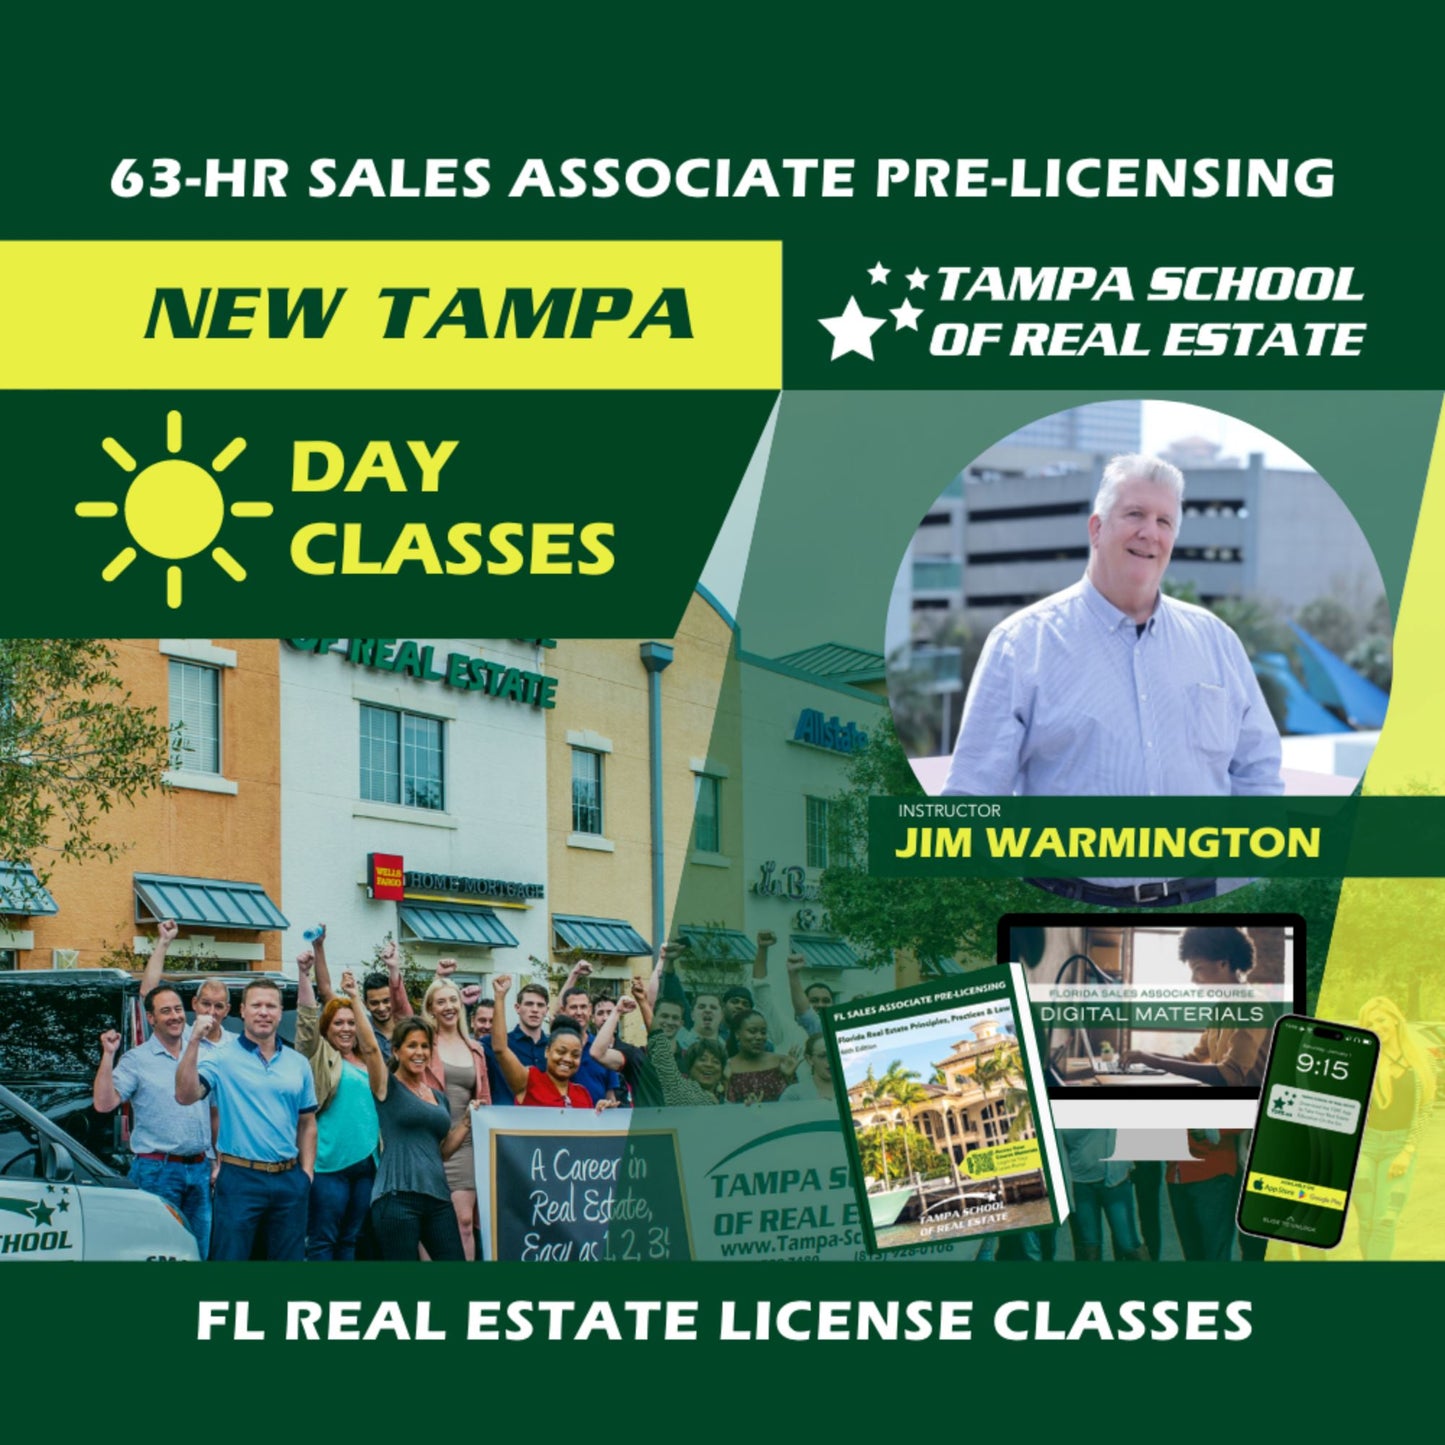 New Tampa | Dec 11 8:30am | 63-HR FL Real Estate Classes SLPRE TSRE New Tampa | Tampa School of Real Estate 